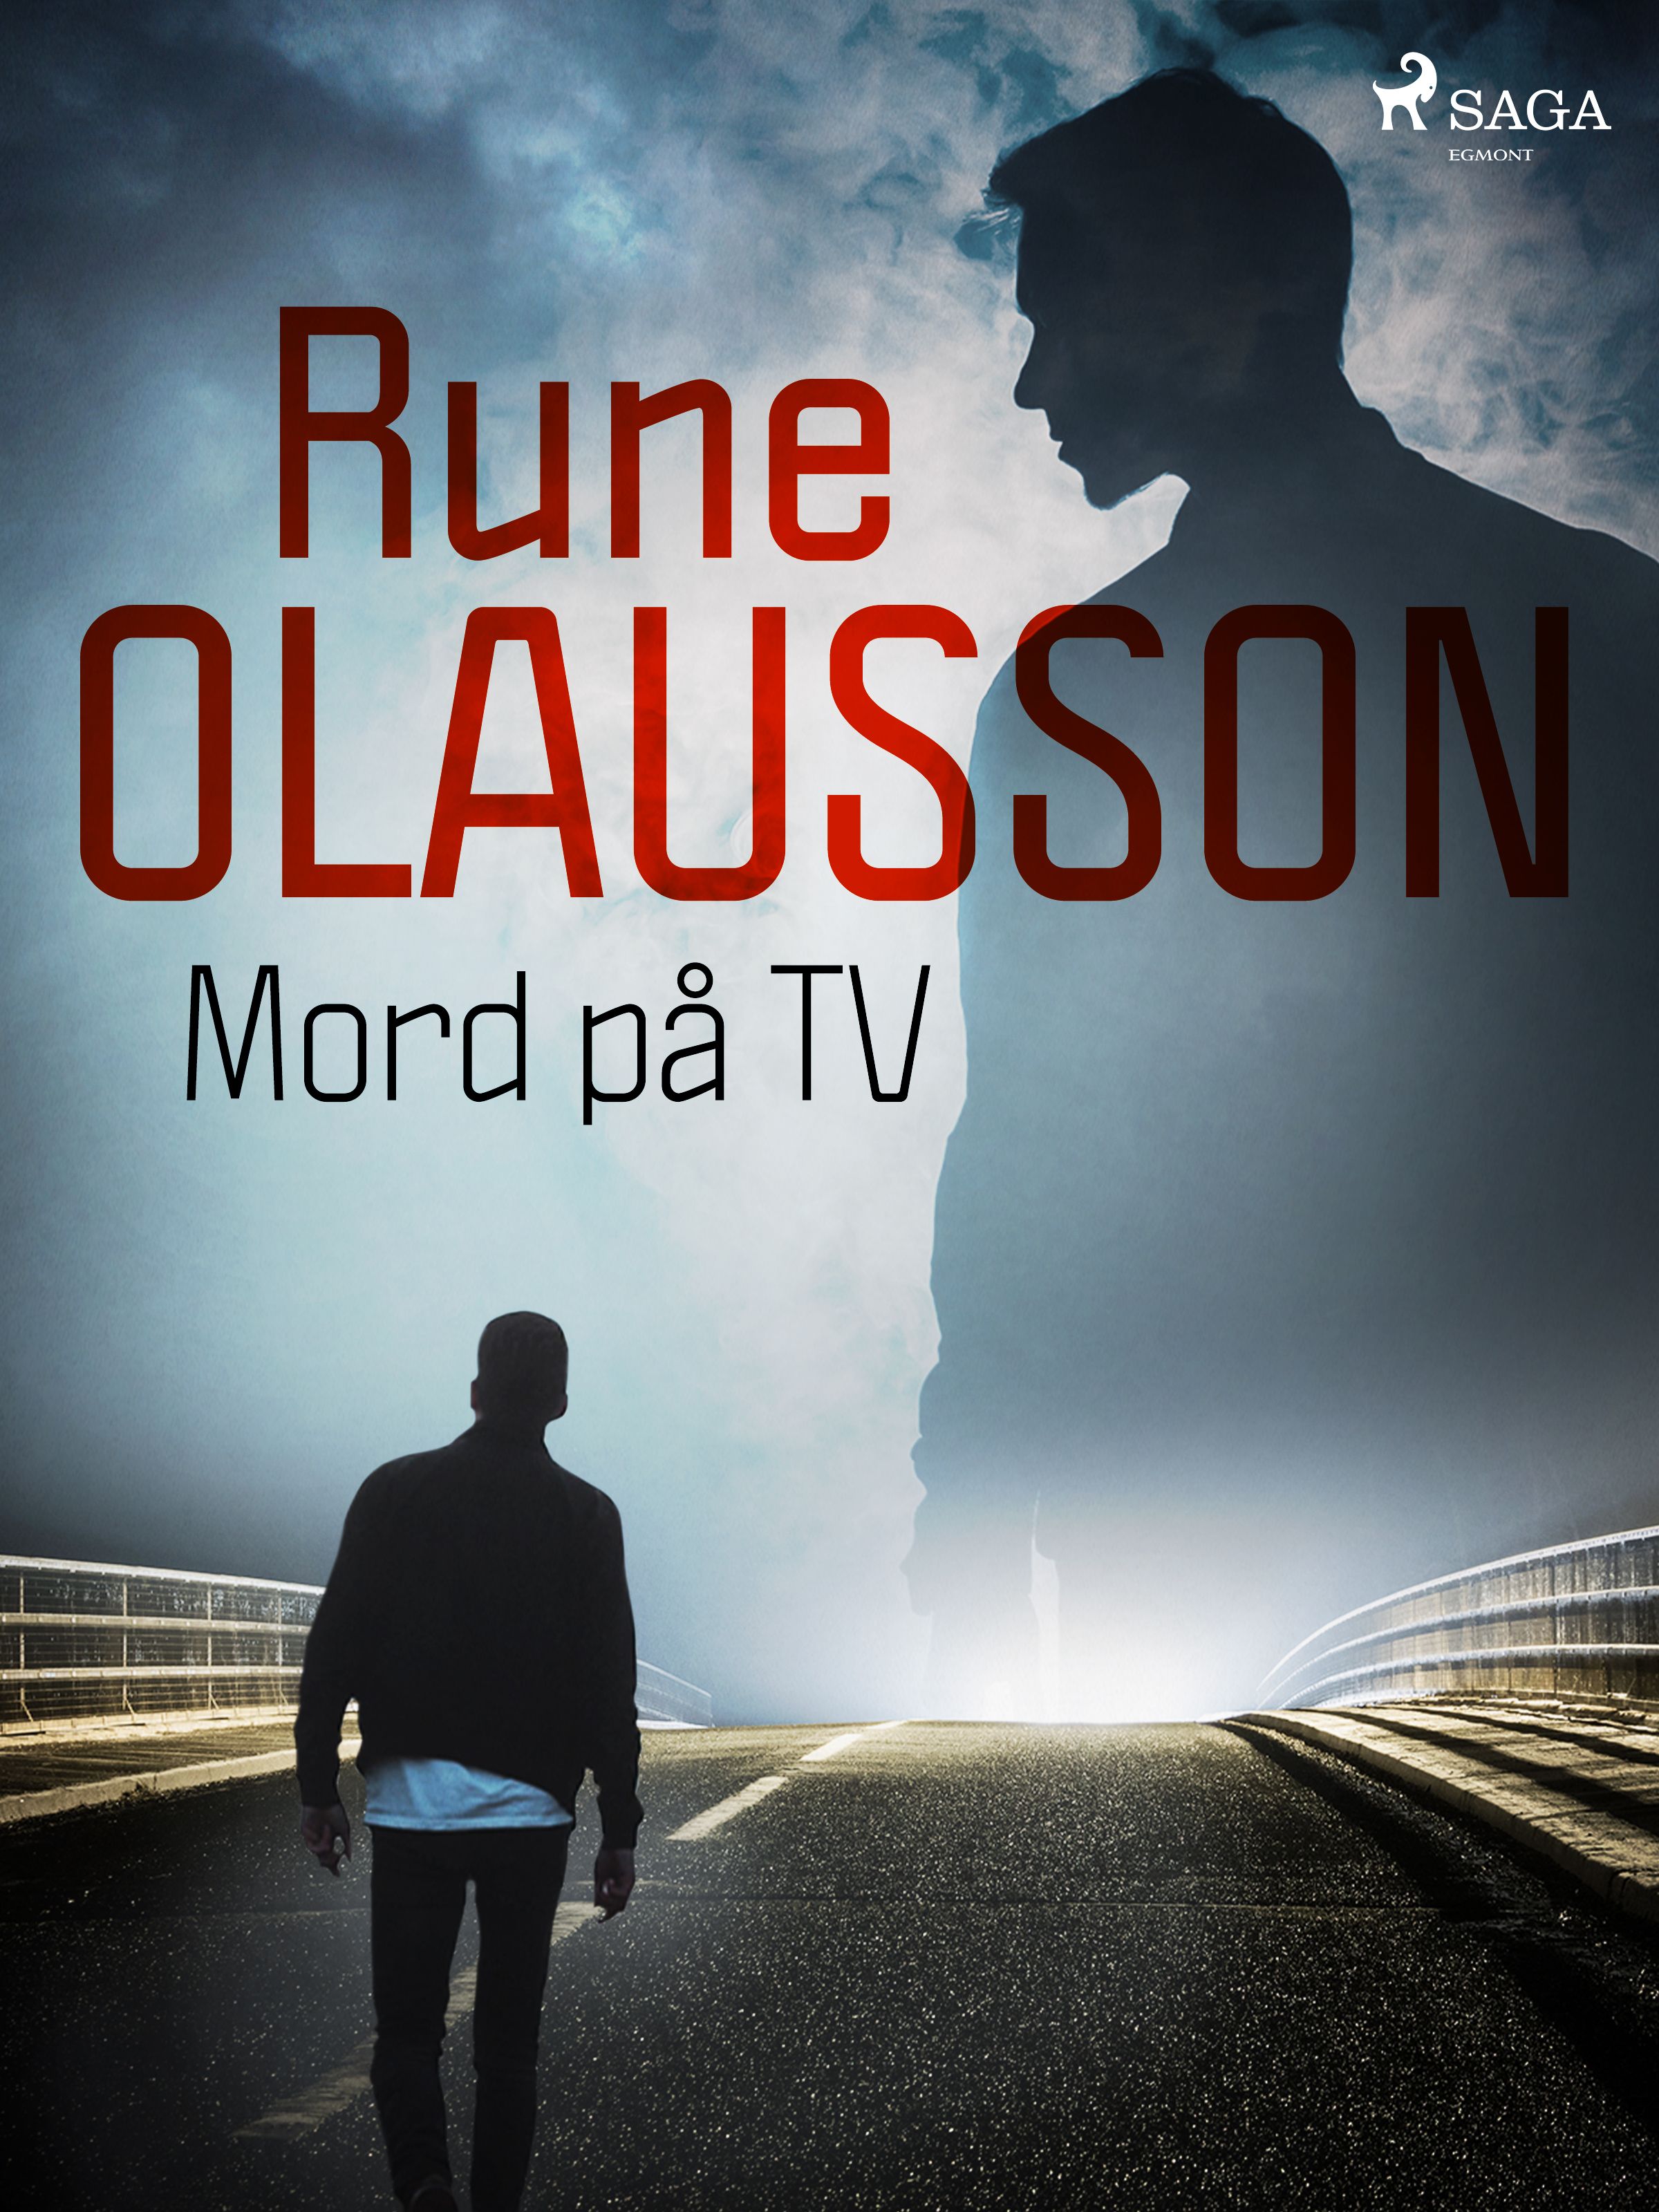 Mord på TV, e-bok av Rune Olausson